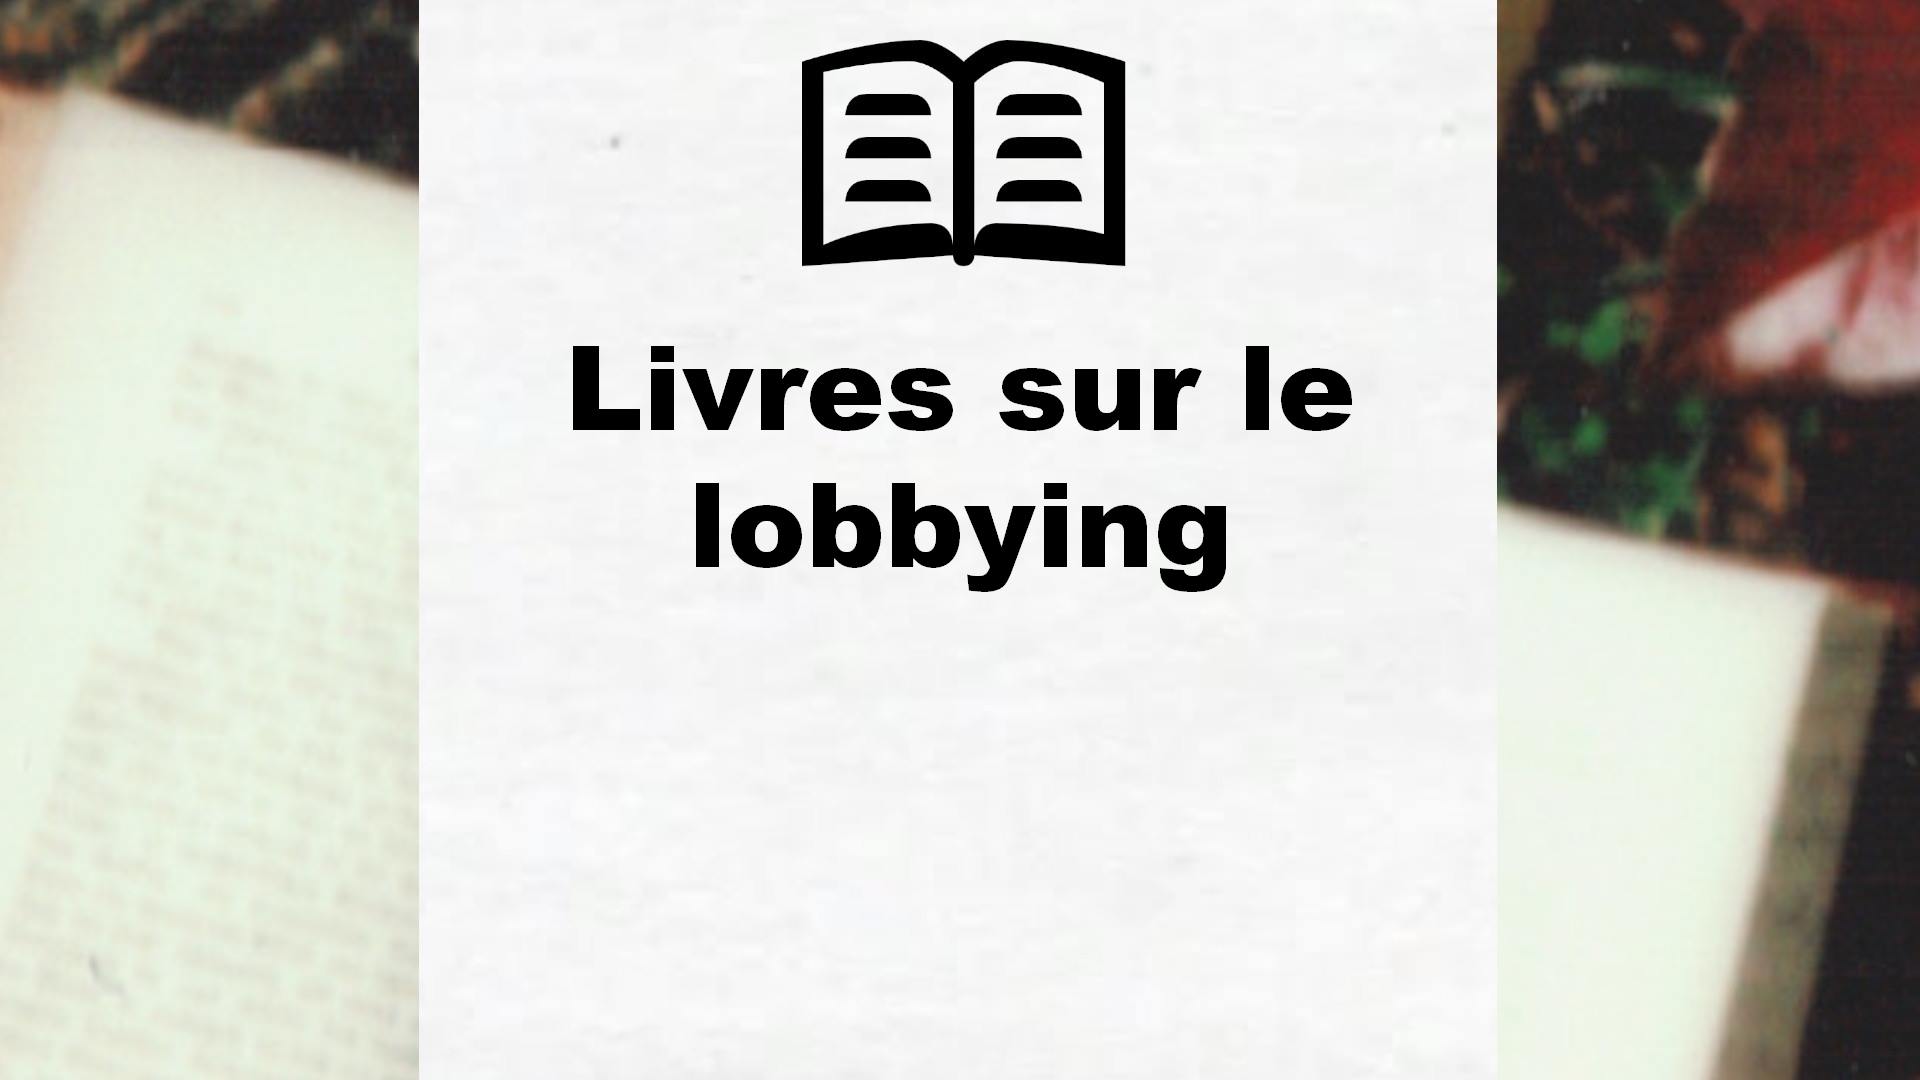 Livres sur le lobbying